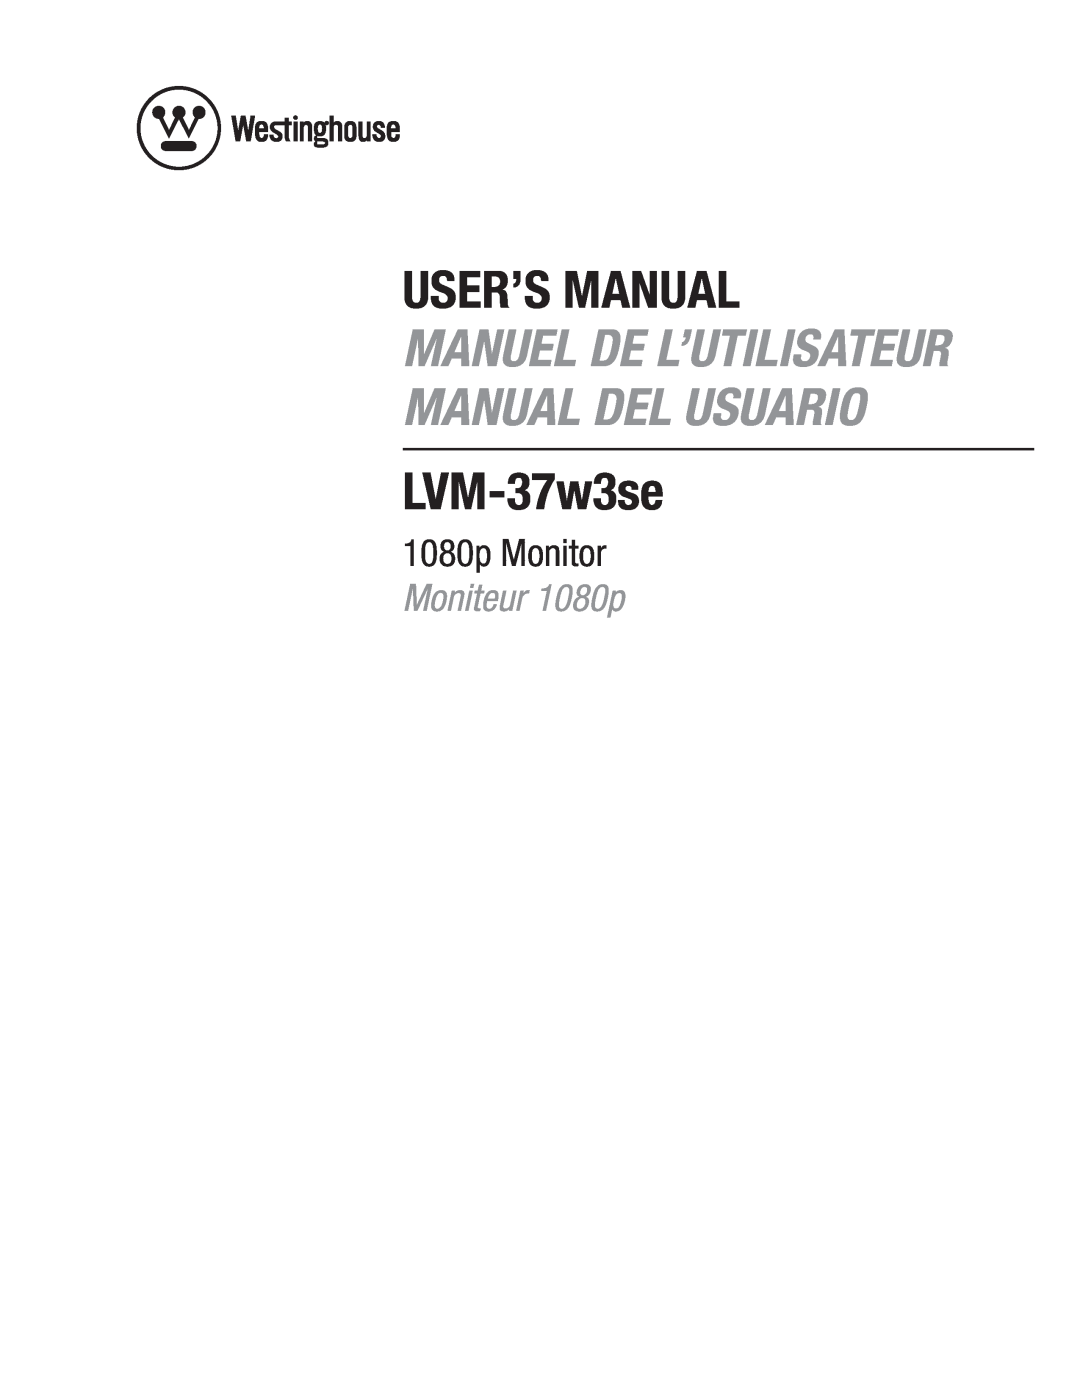 Westinghouse LVM-37w3se user manual User’S Manual, Manuel De L’Utilisateur Manual Del Usuario, 1080p Monitor 